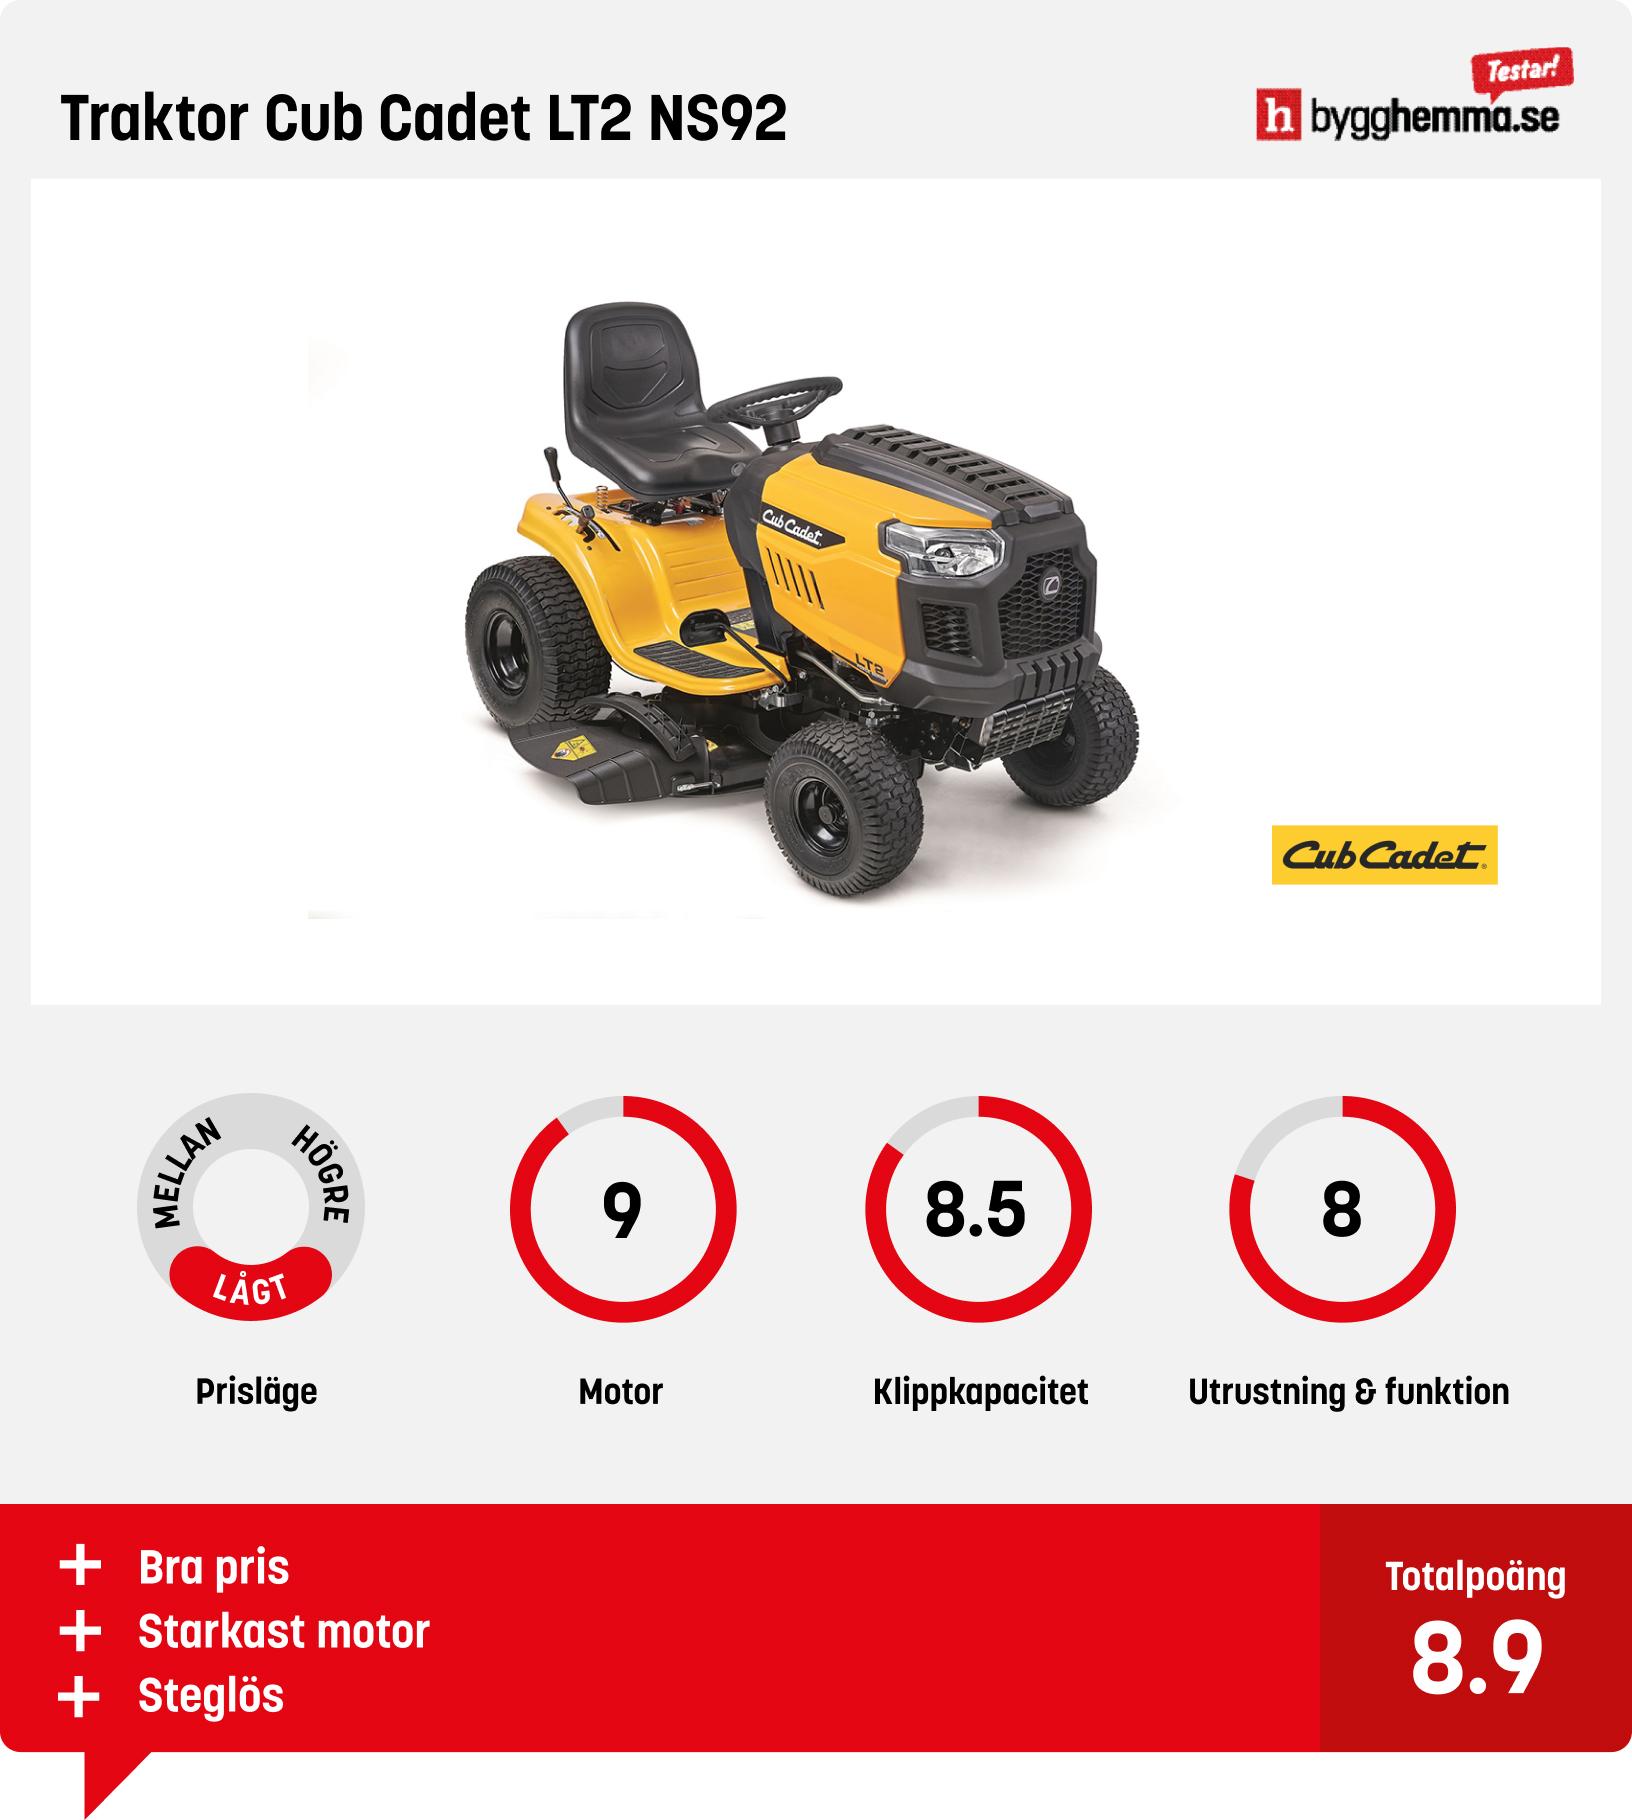 Trädgårdstraktor test - Traktor Cub Cadet LT2 NS92